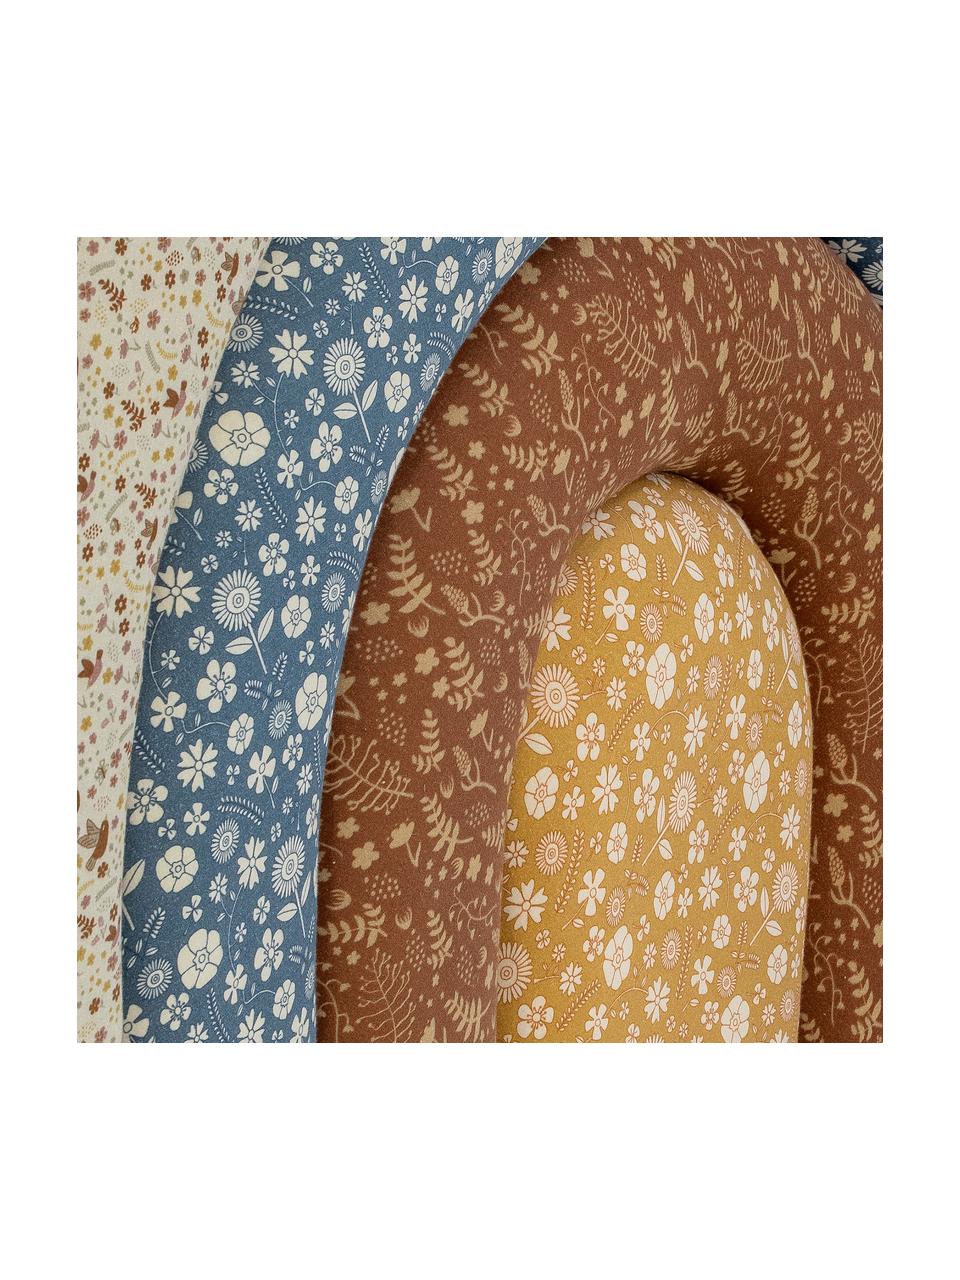 Tête de lit en forme d'arc-en-ciel et imprimé floral Jo, Jaune, brun, bleu, blanc crème, larg. 100 x haut. 90 cm